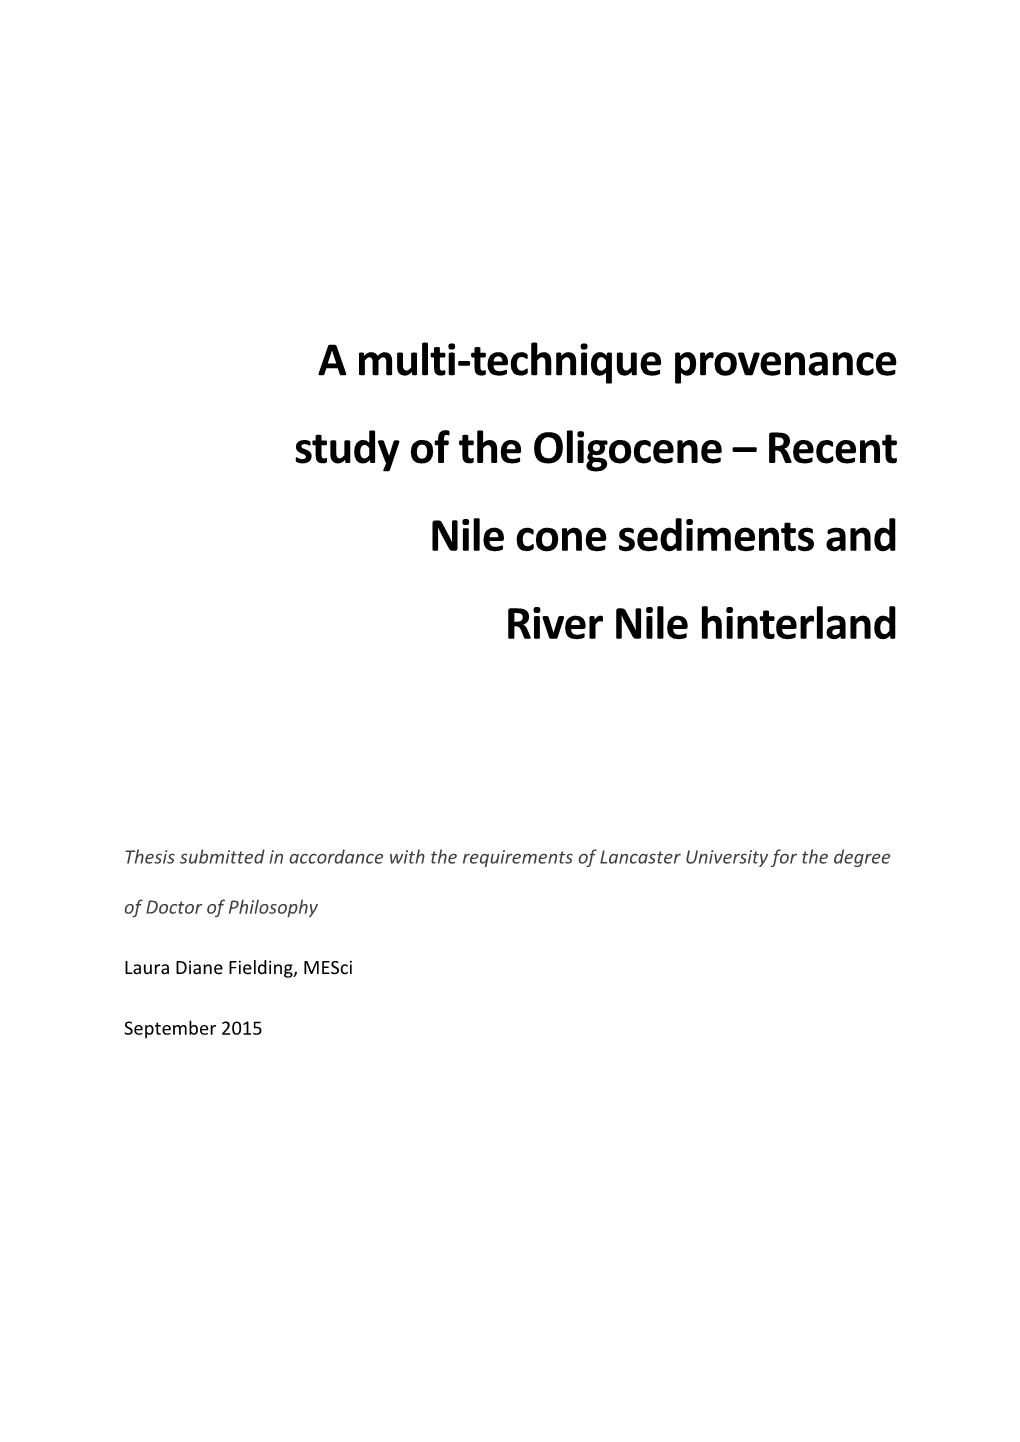 A Multi-Technique Provenance Study of the Oligocene – Recent Nile Cone Sediments and River Nile Hinterland